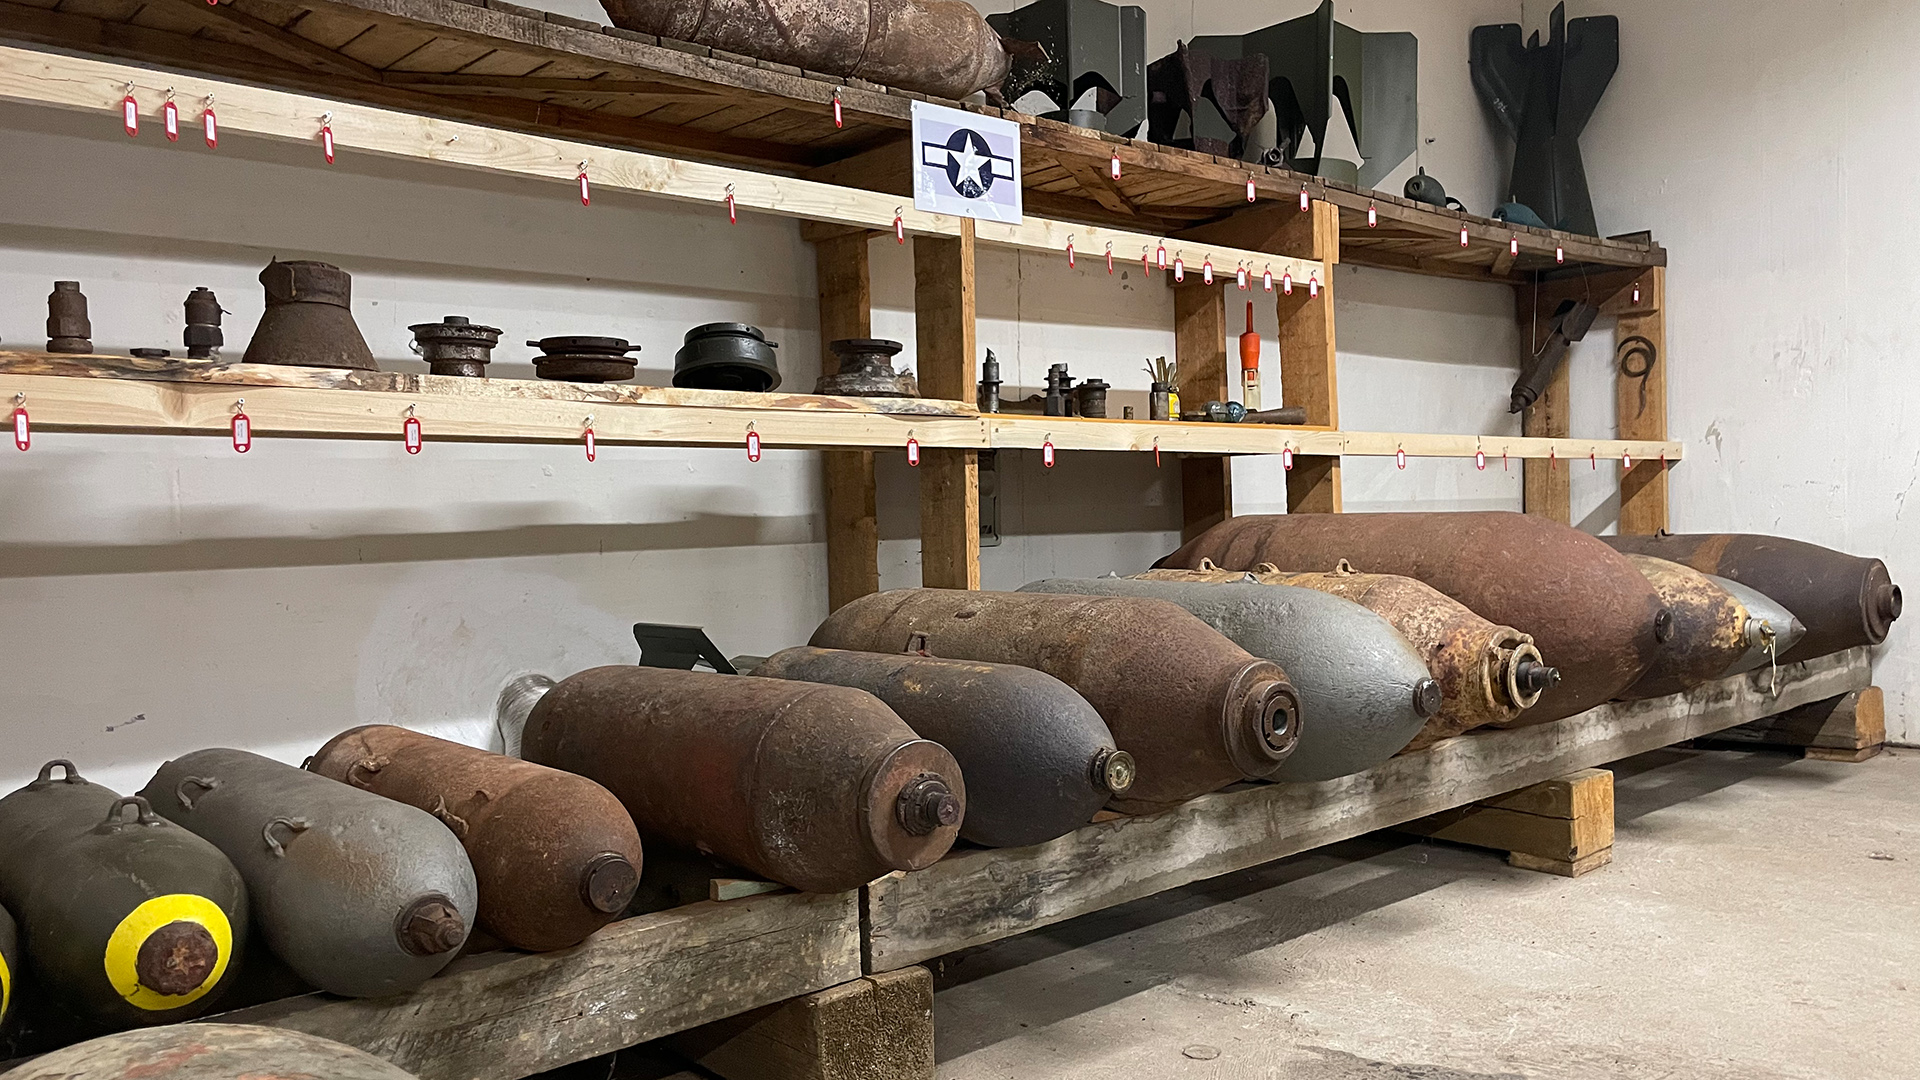 Alte Sprengkörper liegen in einem Regal der Sprengschule | Sven Knobloch